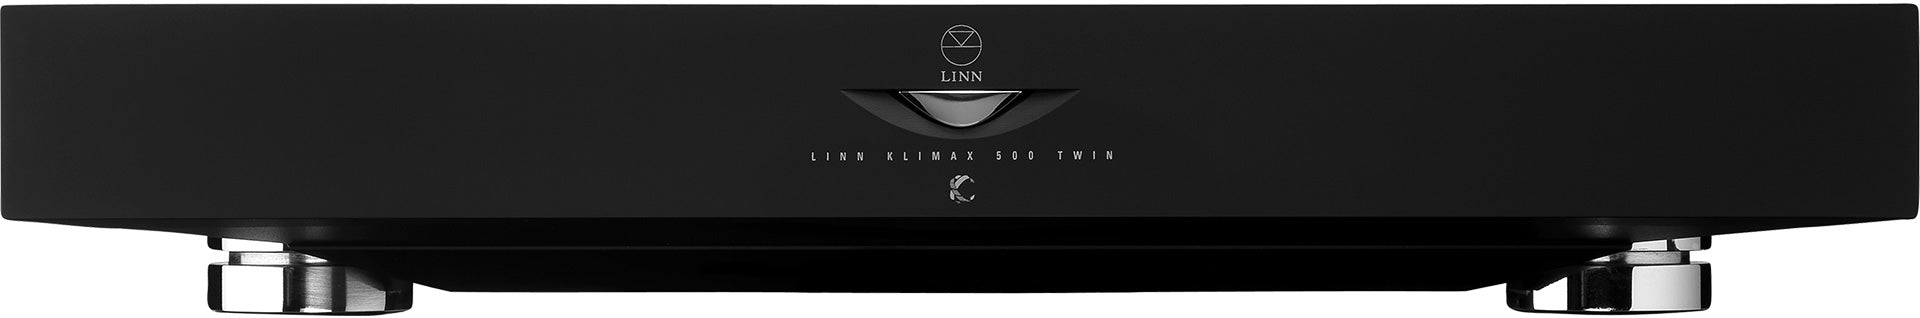 Linn Klimax Single & Two channel power amp